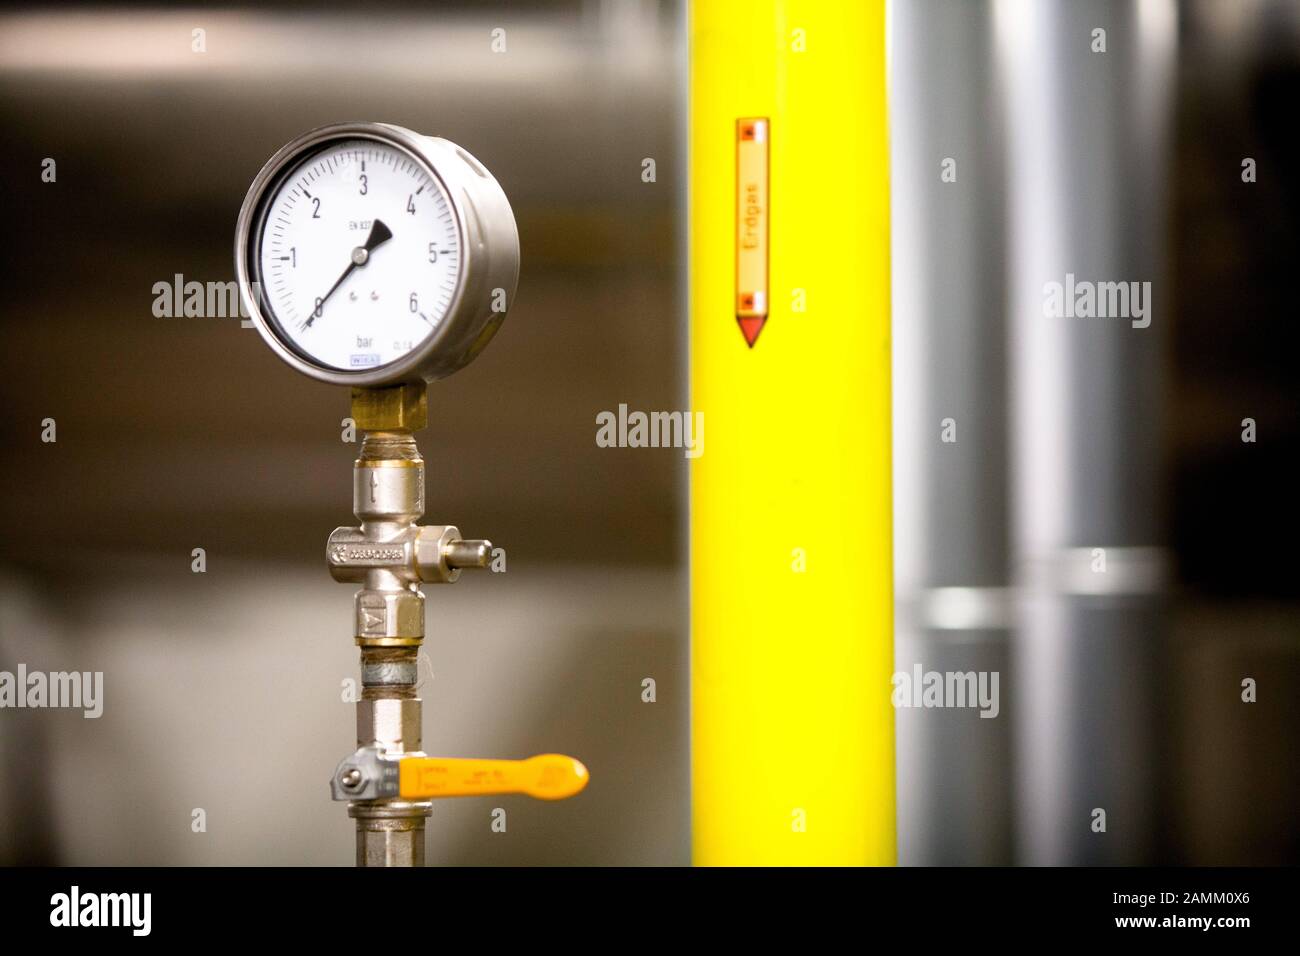 Red de calefacción local de la Universidad Técnica (tu) Munich, en la imagen un indicador de presión. [traducción automática] Foto de stock